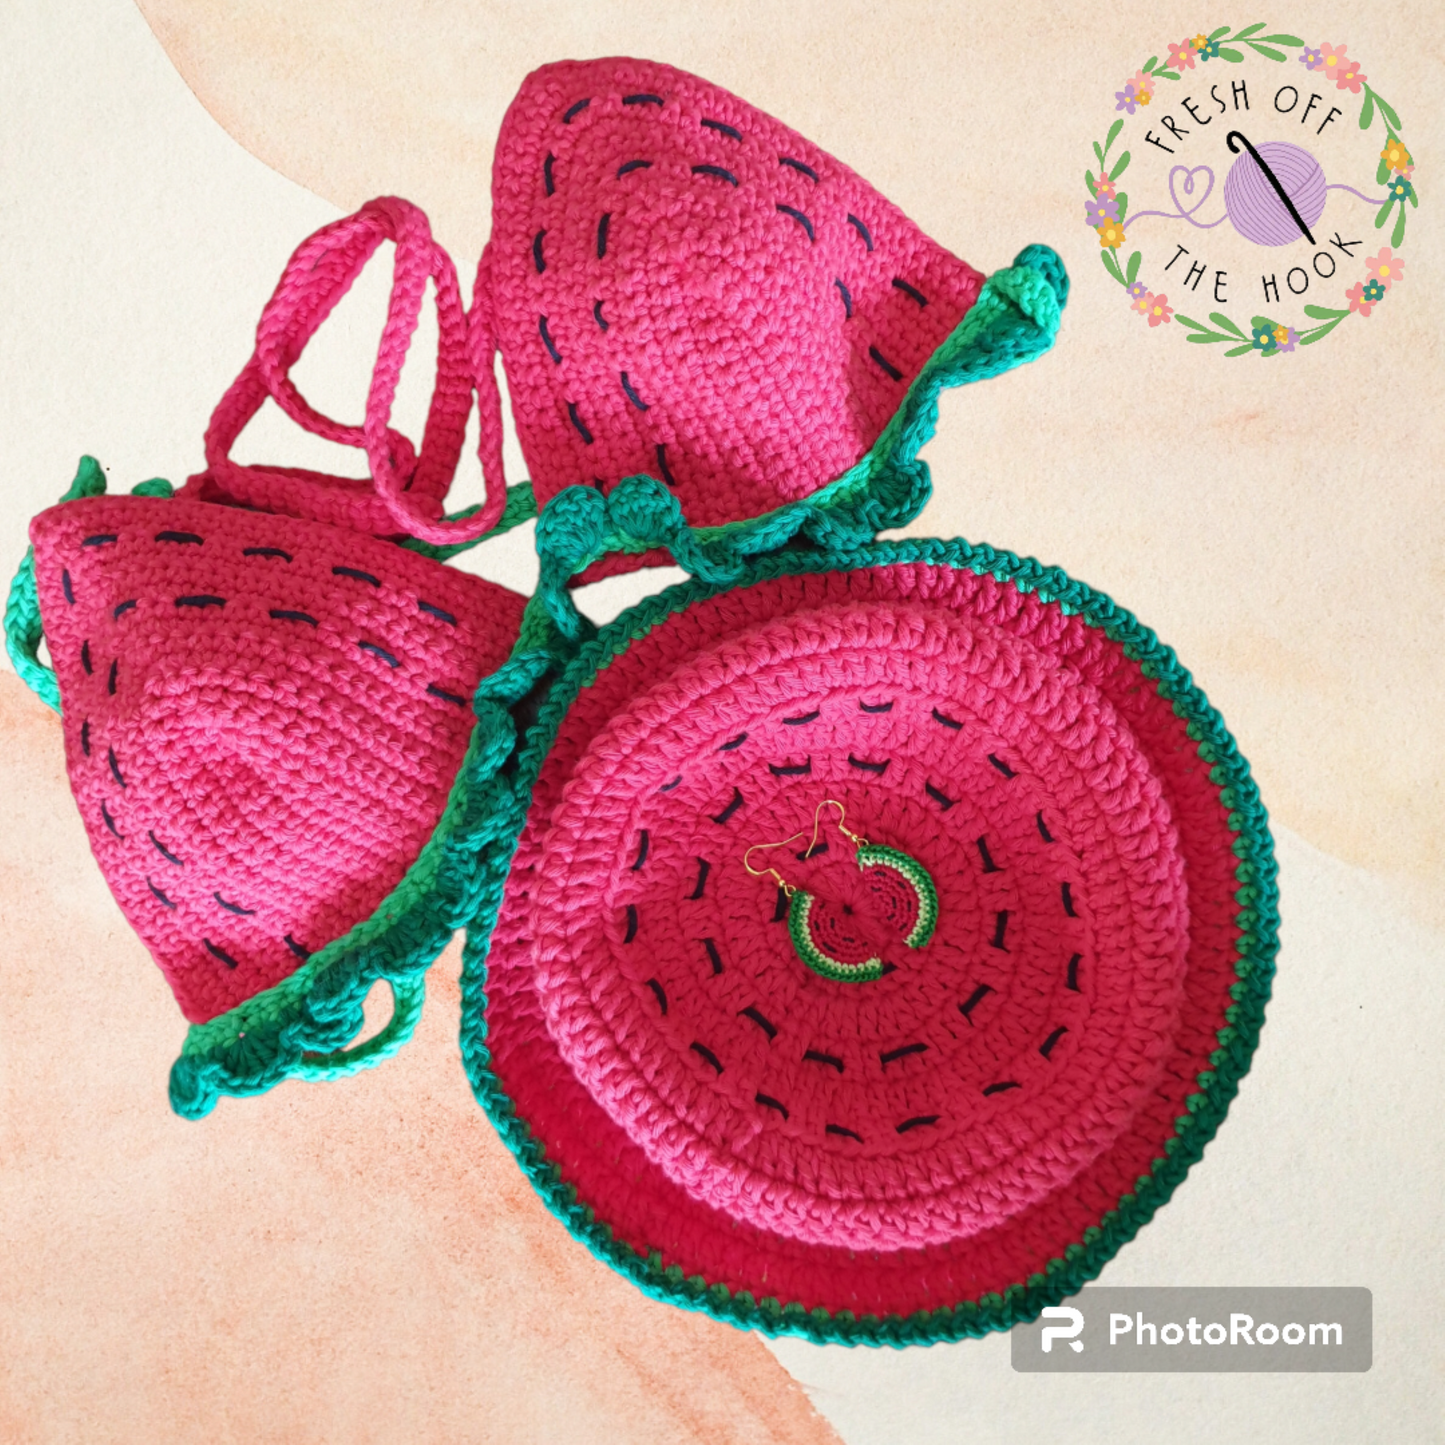 watermelon-bucket-hat